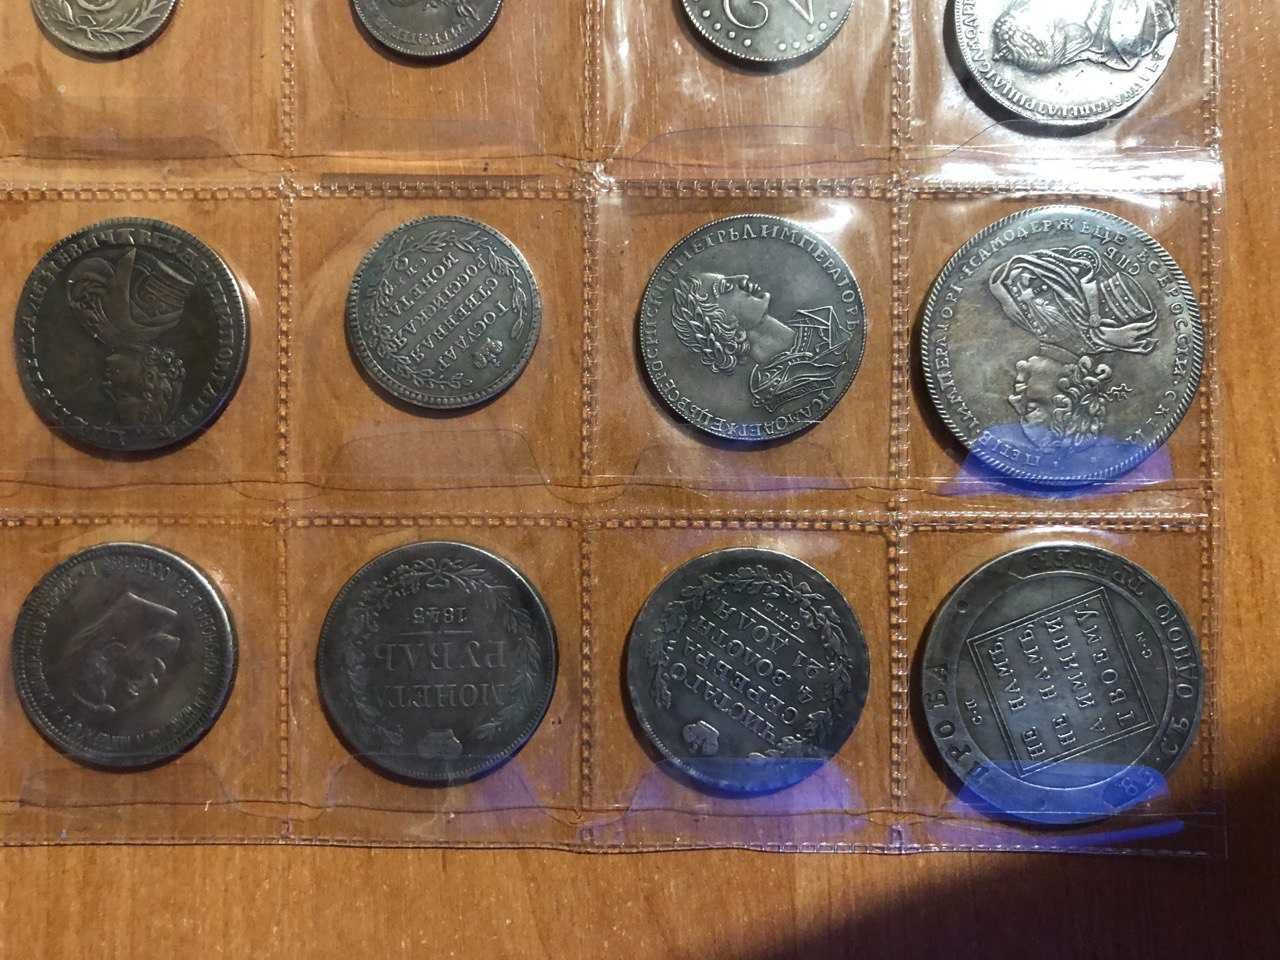 Монеты для коллекции